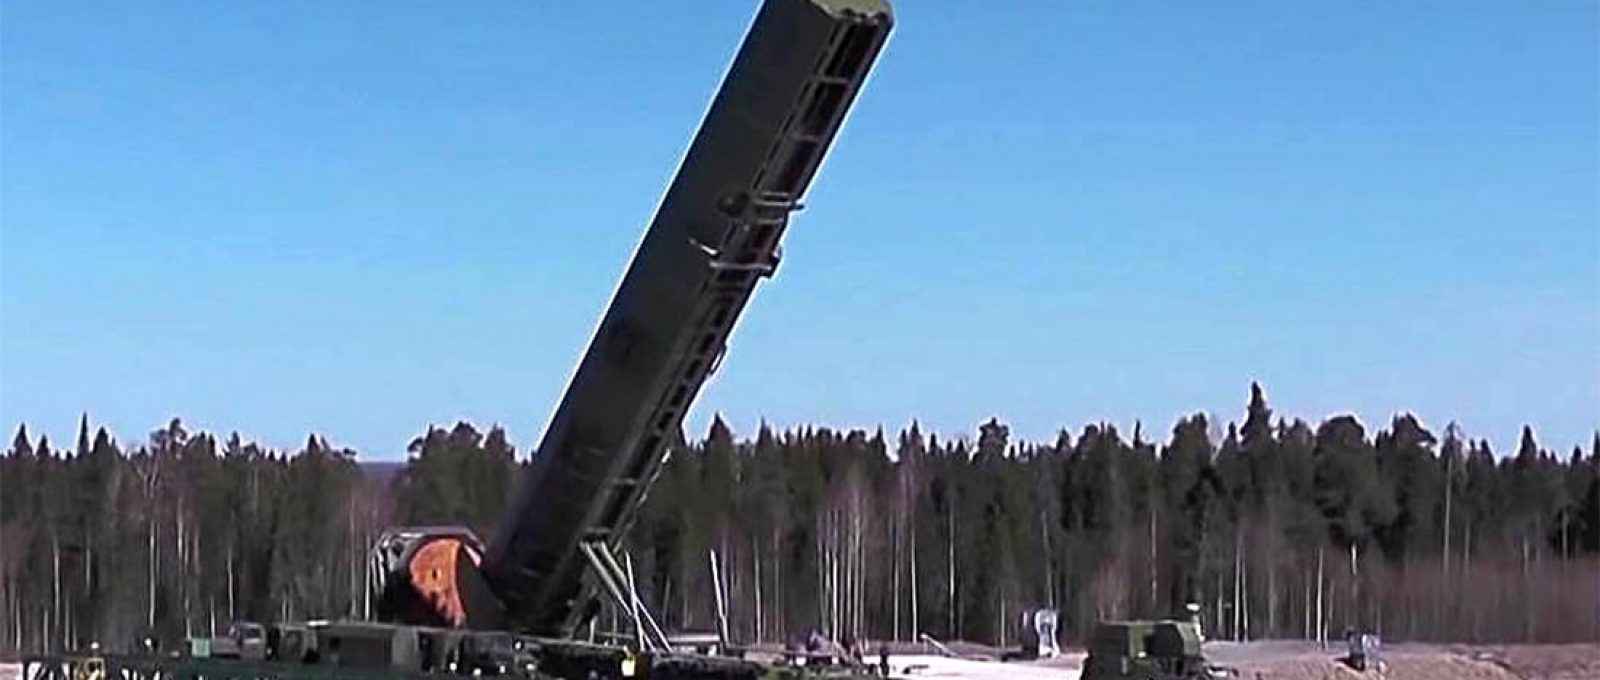 Sistema de lançamento de ICBM Sarmat (Foto: Serviço de imprensa do Ministério da Defesa Russo/Tass).